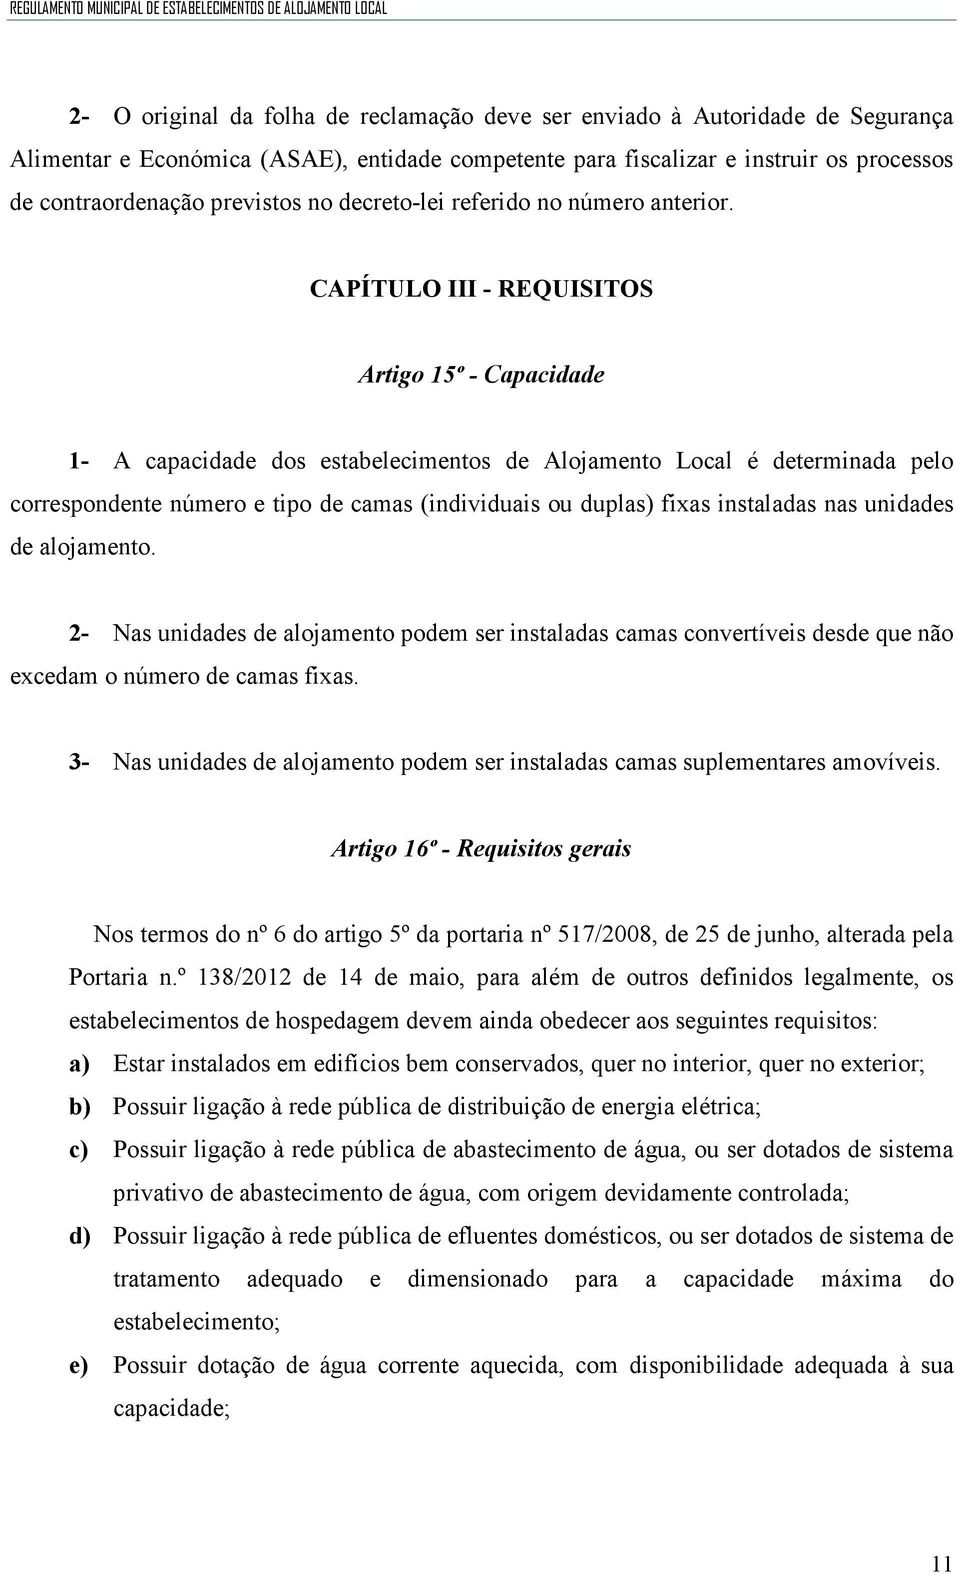 CAPÍTULO III - REQUISITOS Artigo 15º - Capacidade 1- A capacidade dos estabelecimentos de Alojamento Local é determinada pelo correspondente número e tipo de camas (individuais ou duplas) fixas